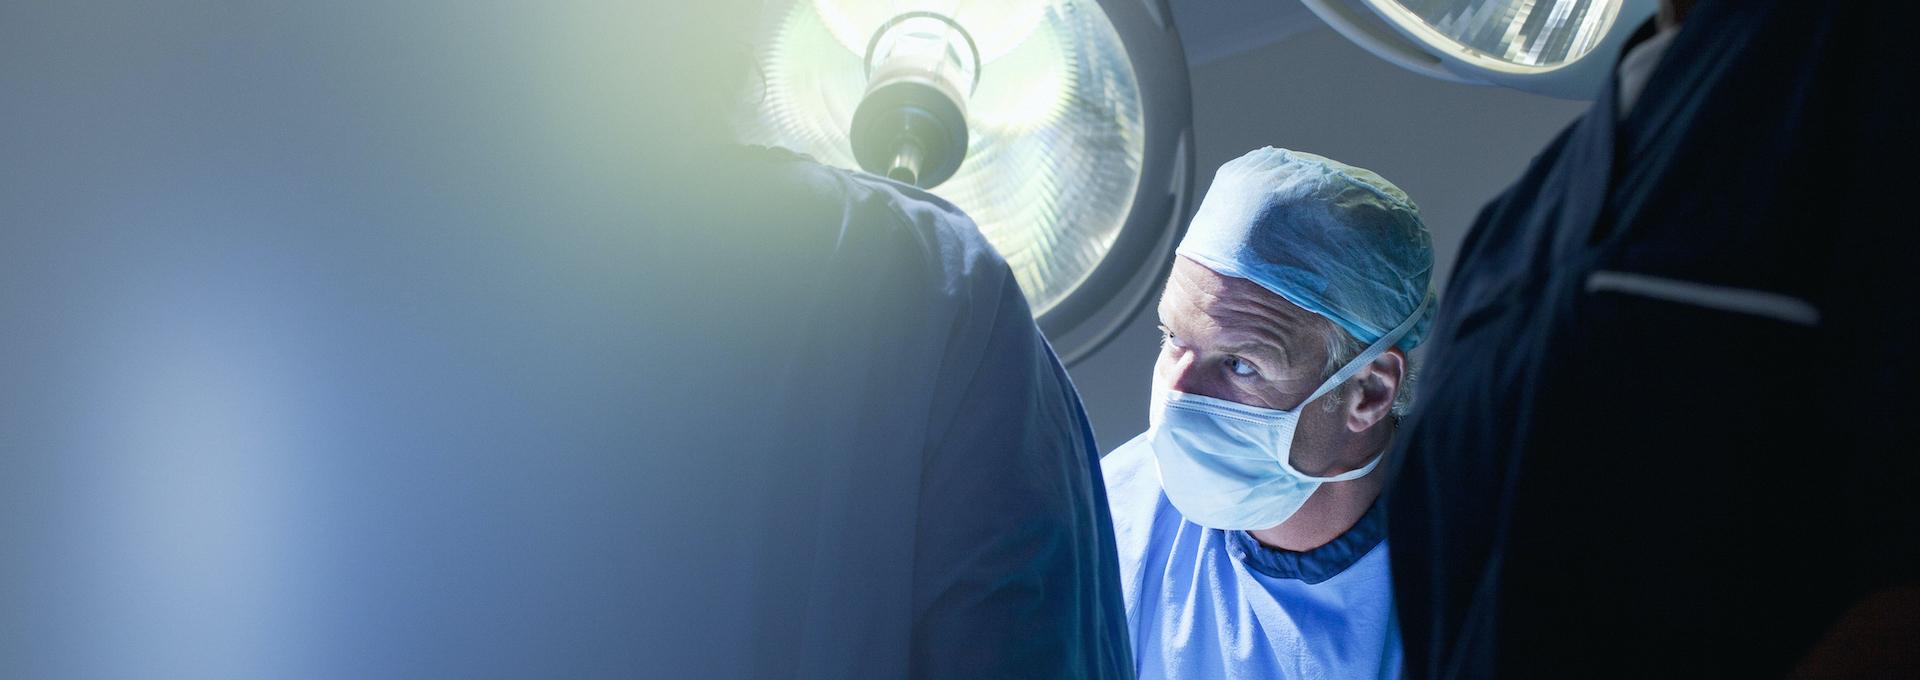 Symbolbild Traumaversorgung: Unfallchirurg in OP-Kleidung mit weiteren OP-Mitarbeitern am Operationstisch